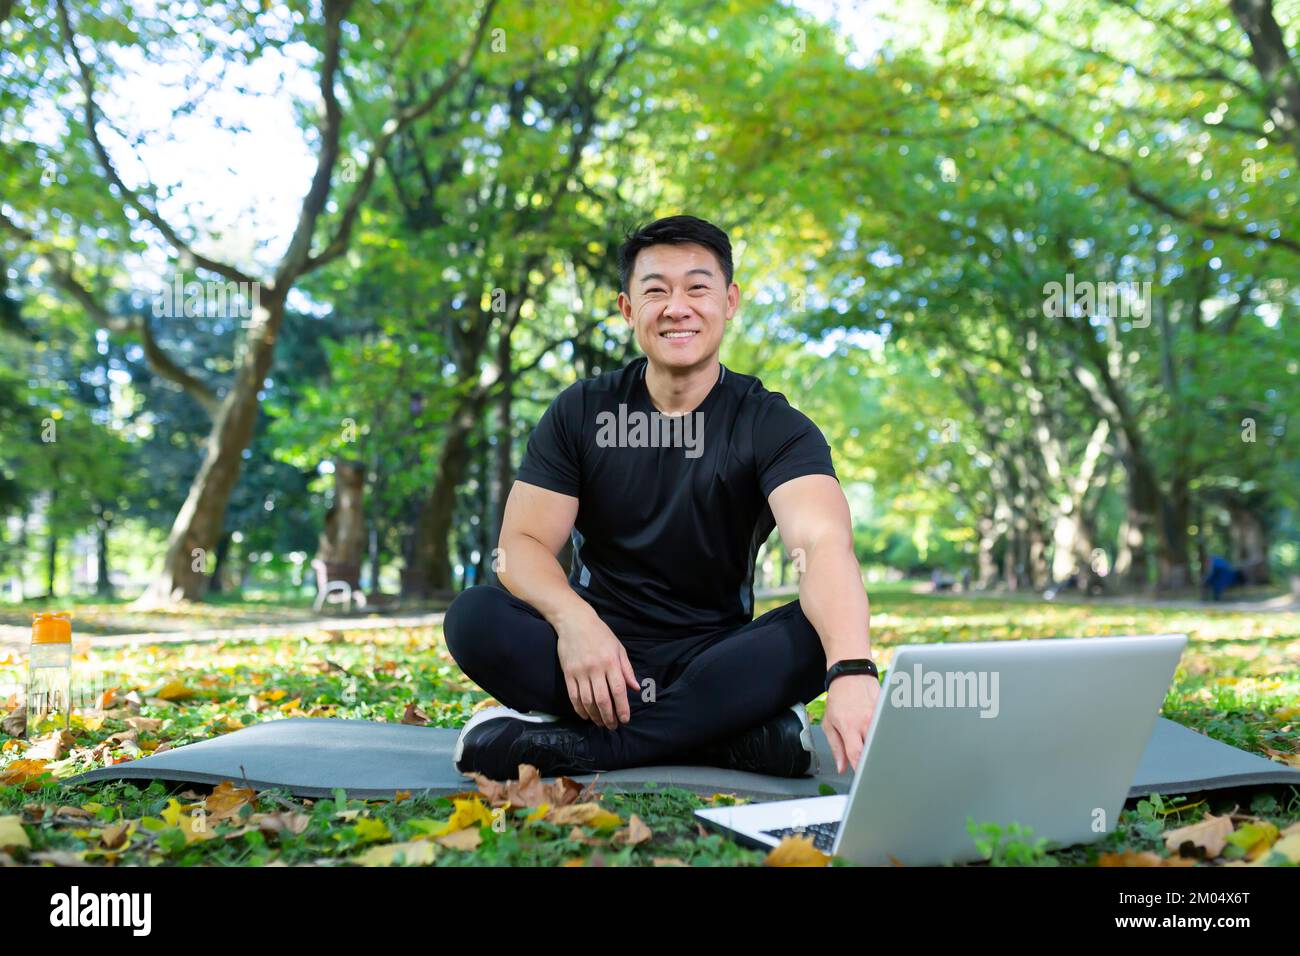 Formation en ligne. Beau homme asiatique, entraîneur sportif assis sur un tapis dans le parc avec un ordinateur portable et conduit l'entraînement à distance avec une caméra vidéo. Il regarde la caméra, sourit. Banque D'Images